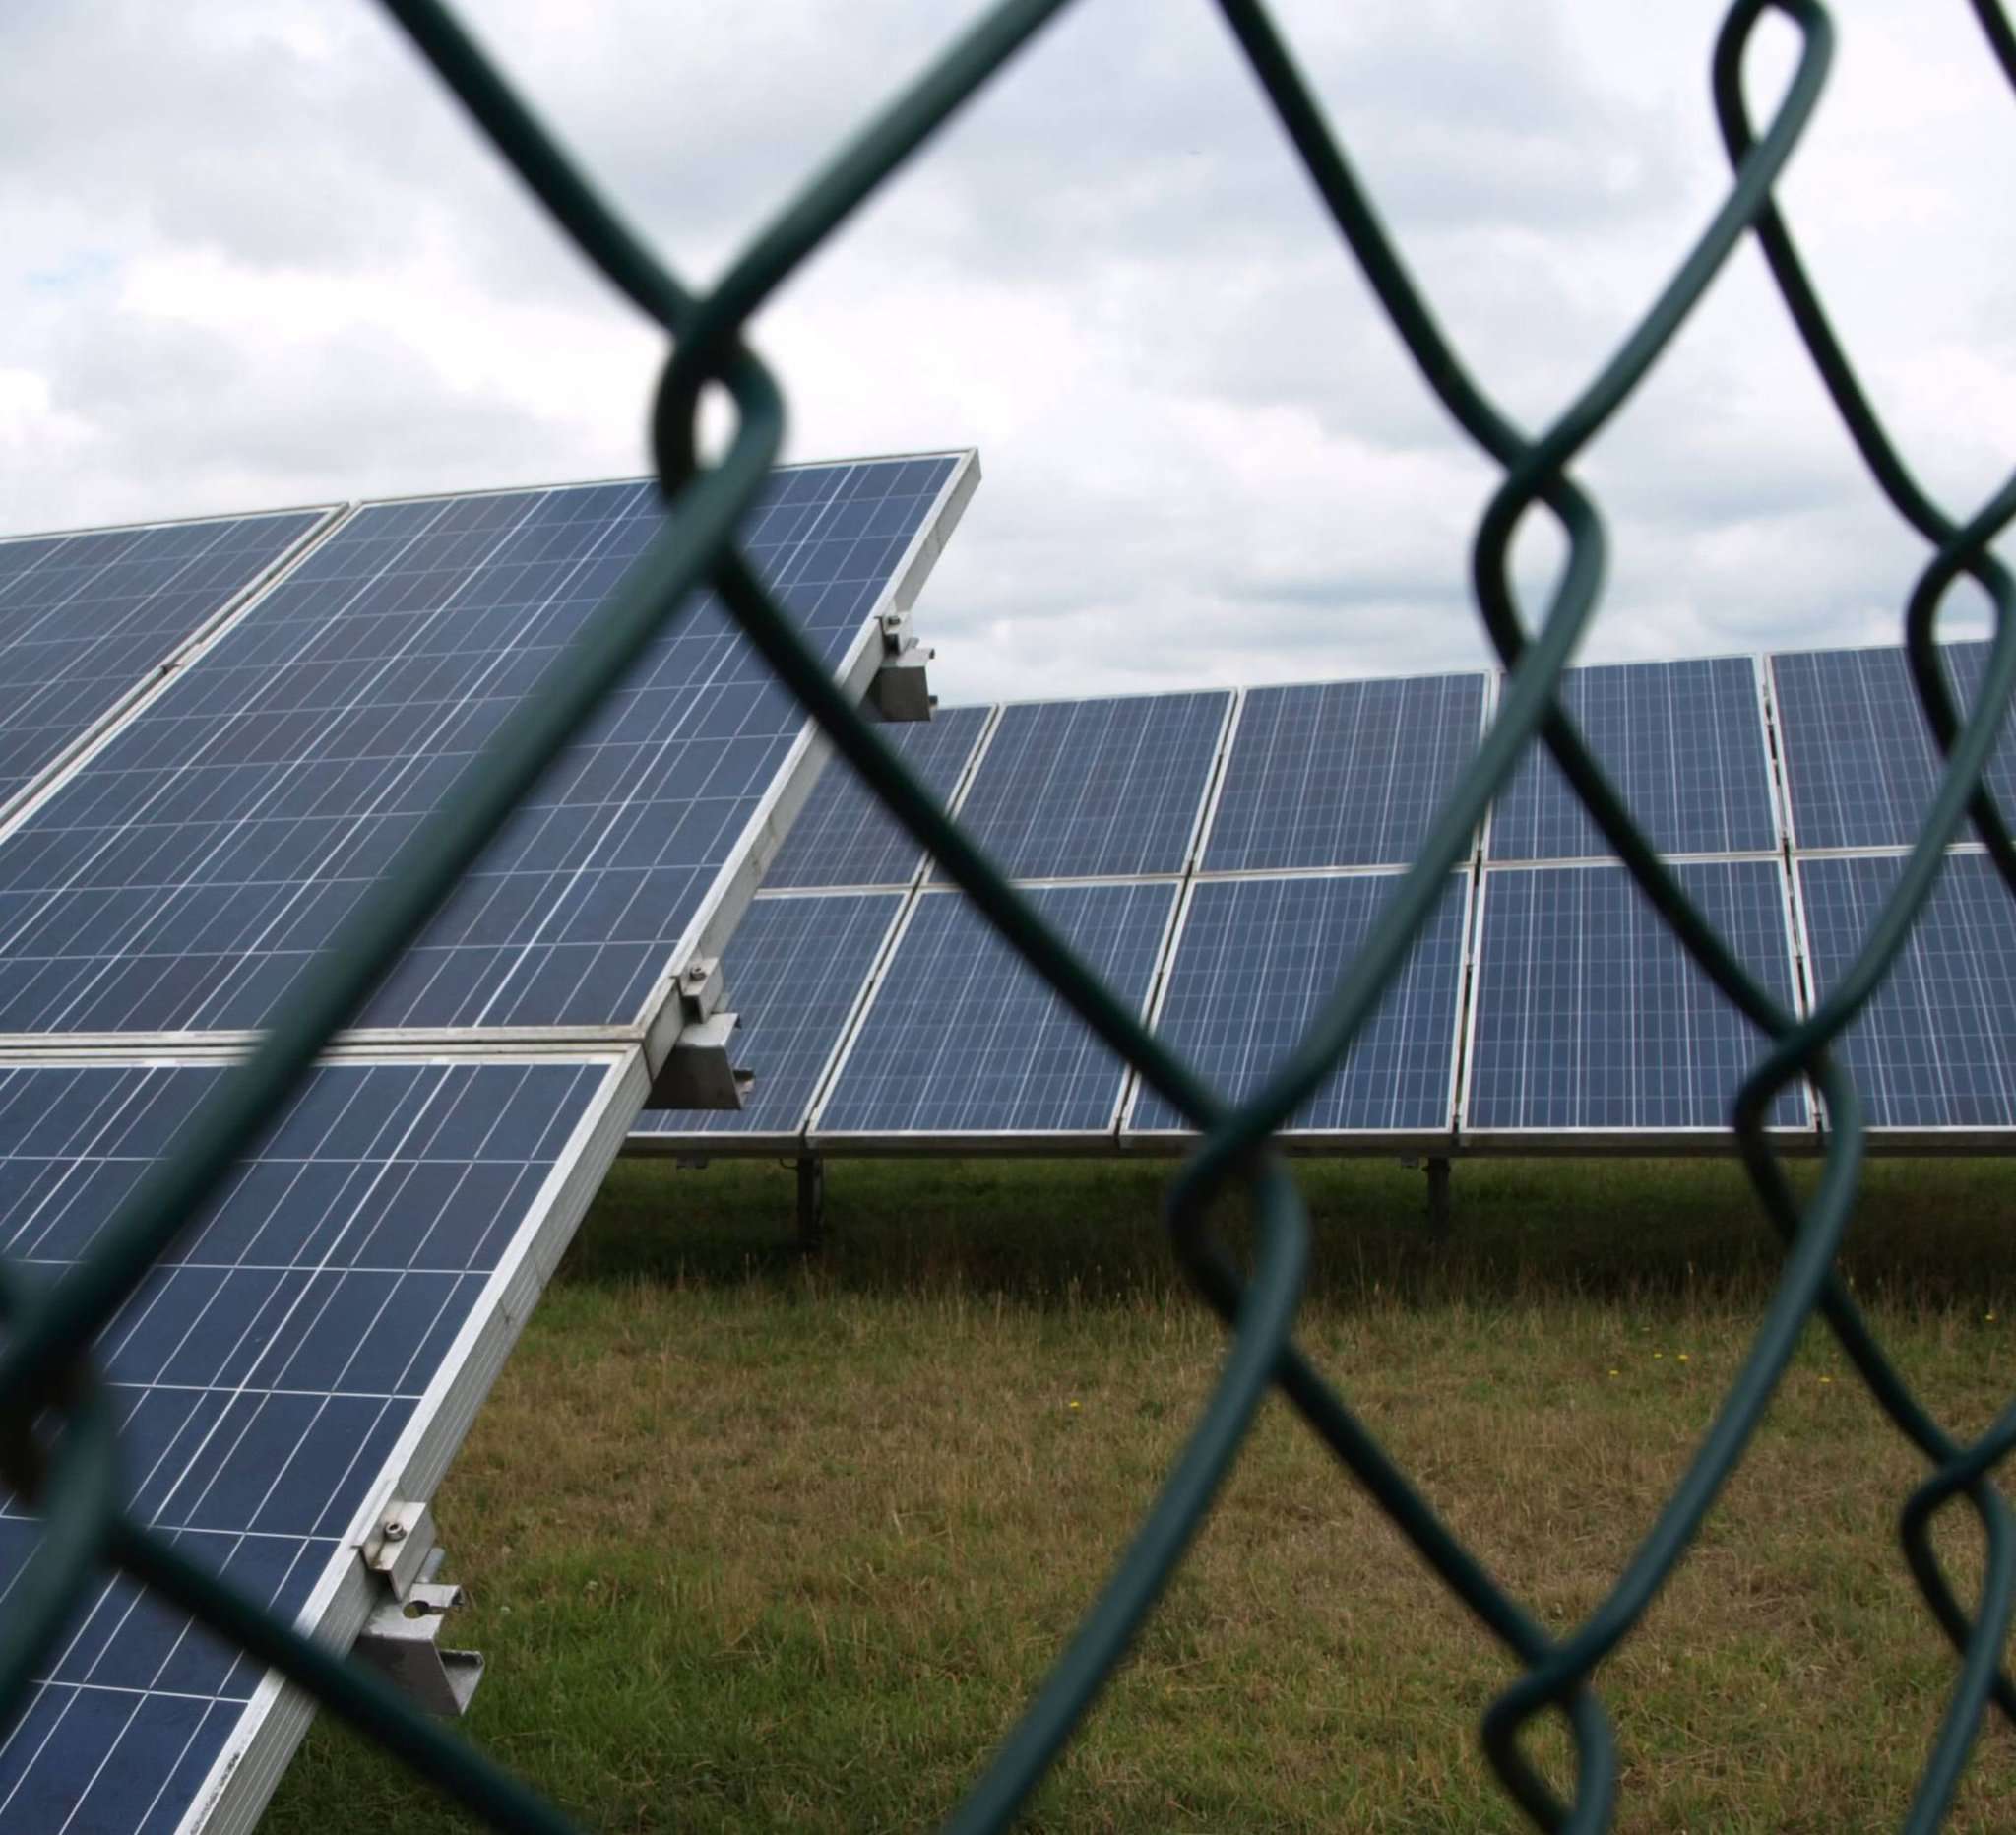 Fotovoltaik-Freiflächenanlagen sollen zur Energiewende beitragen. Aber wo stellt man sie auf, um Gerechtigkeit und Naturschutz zu wahren?